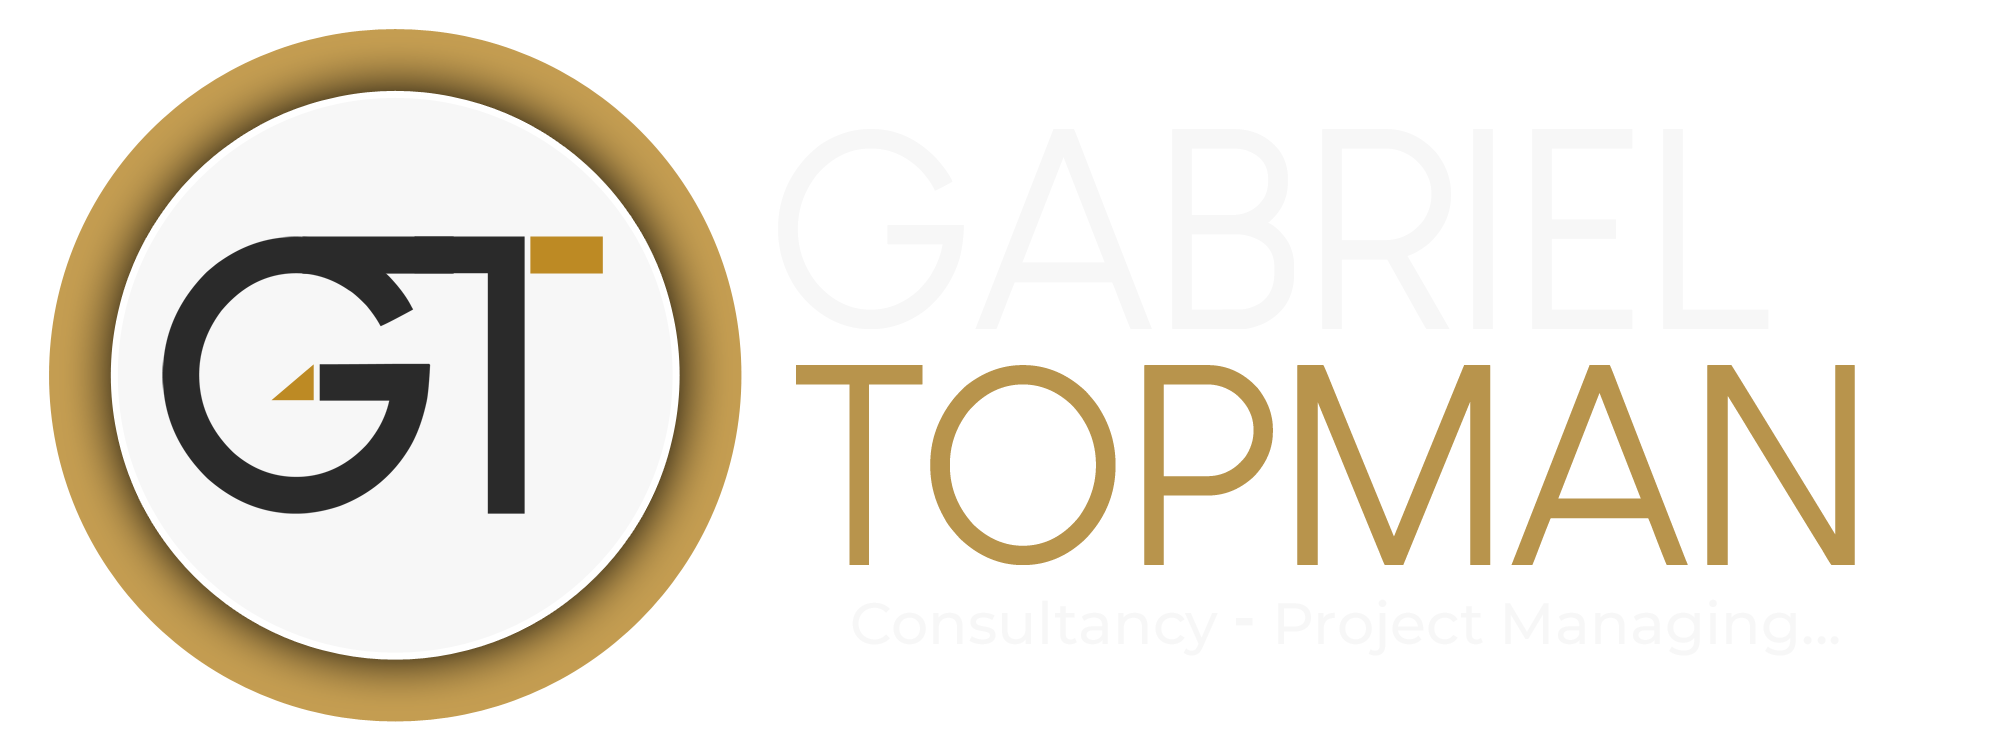 Gabriel Topman